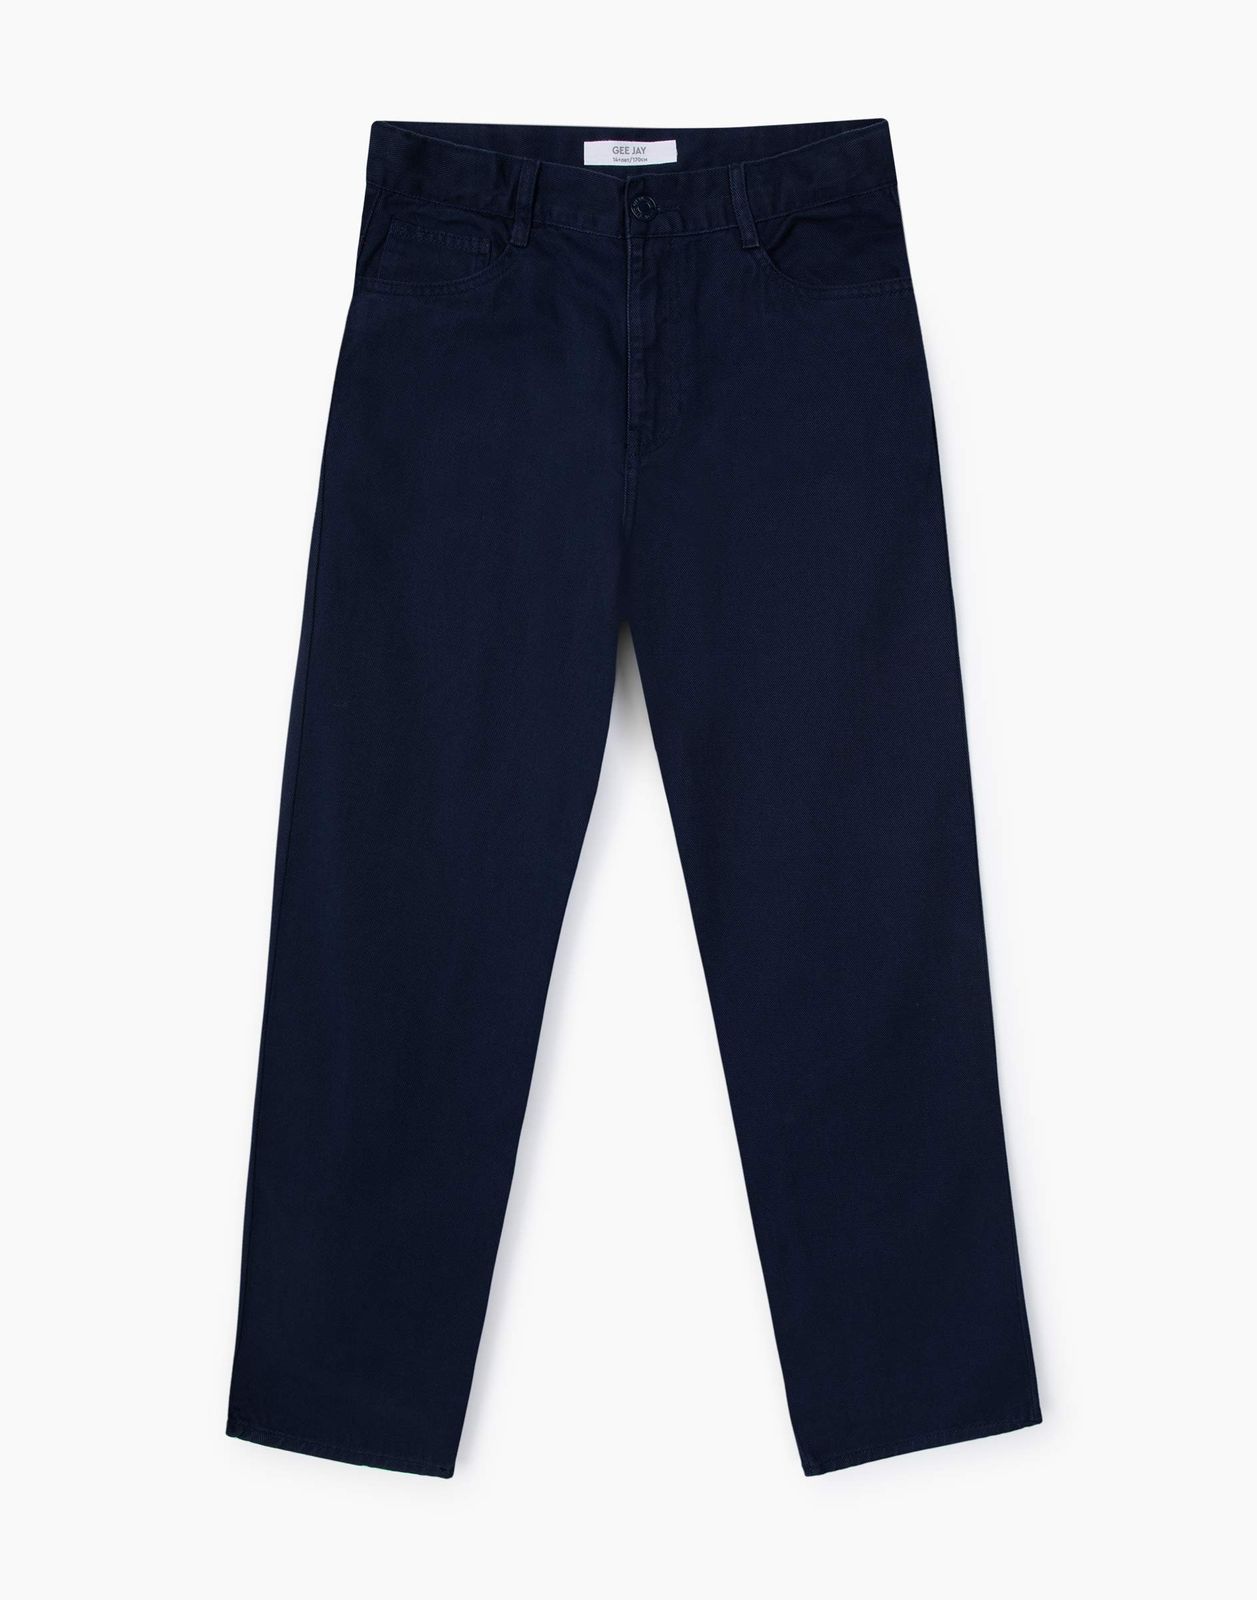 Джинсы Gloria Jeans BJN013671 темно-синий, 152 джинсы slim fit темно синие